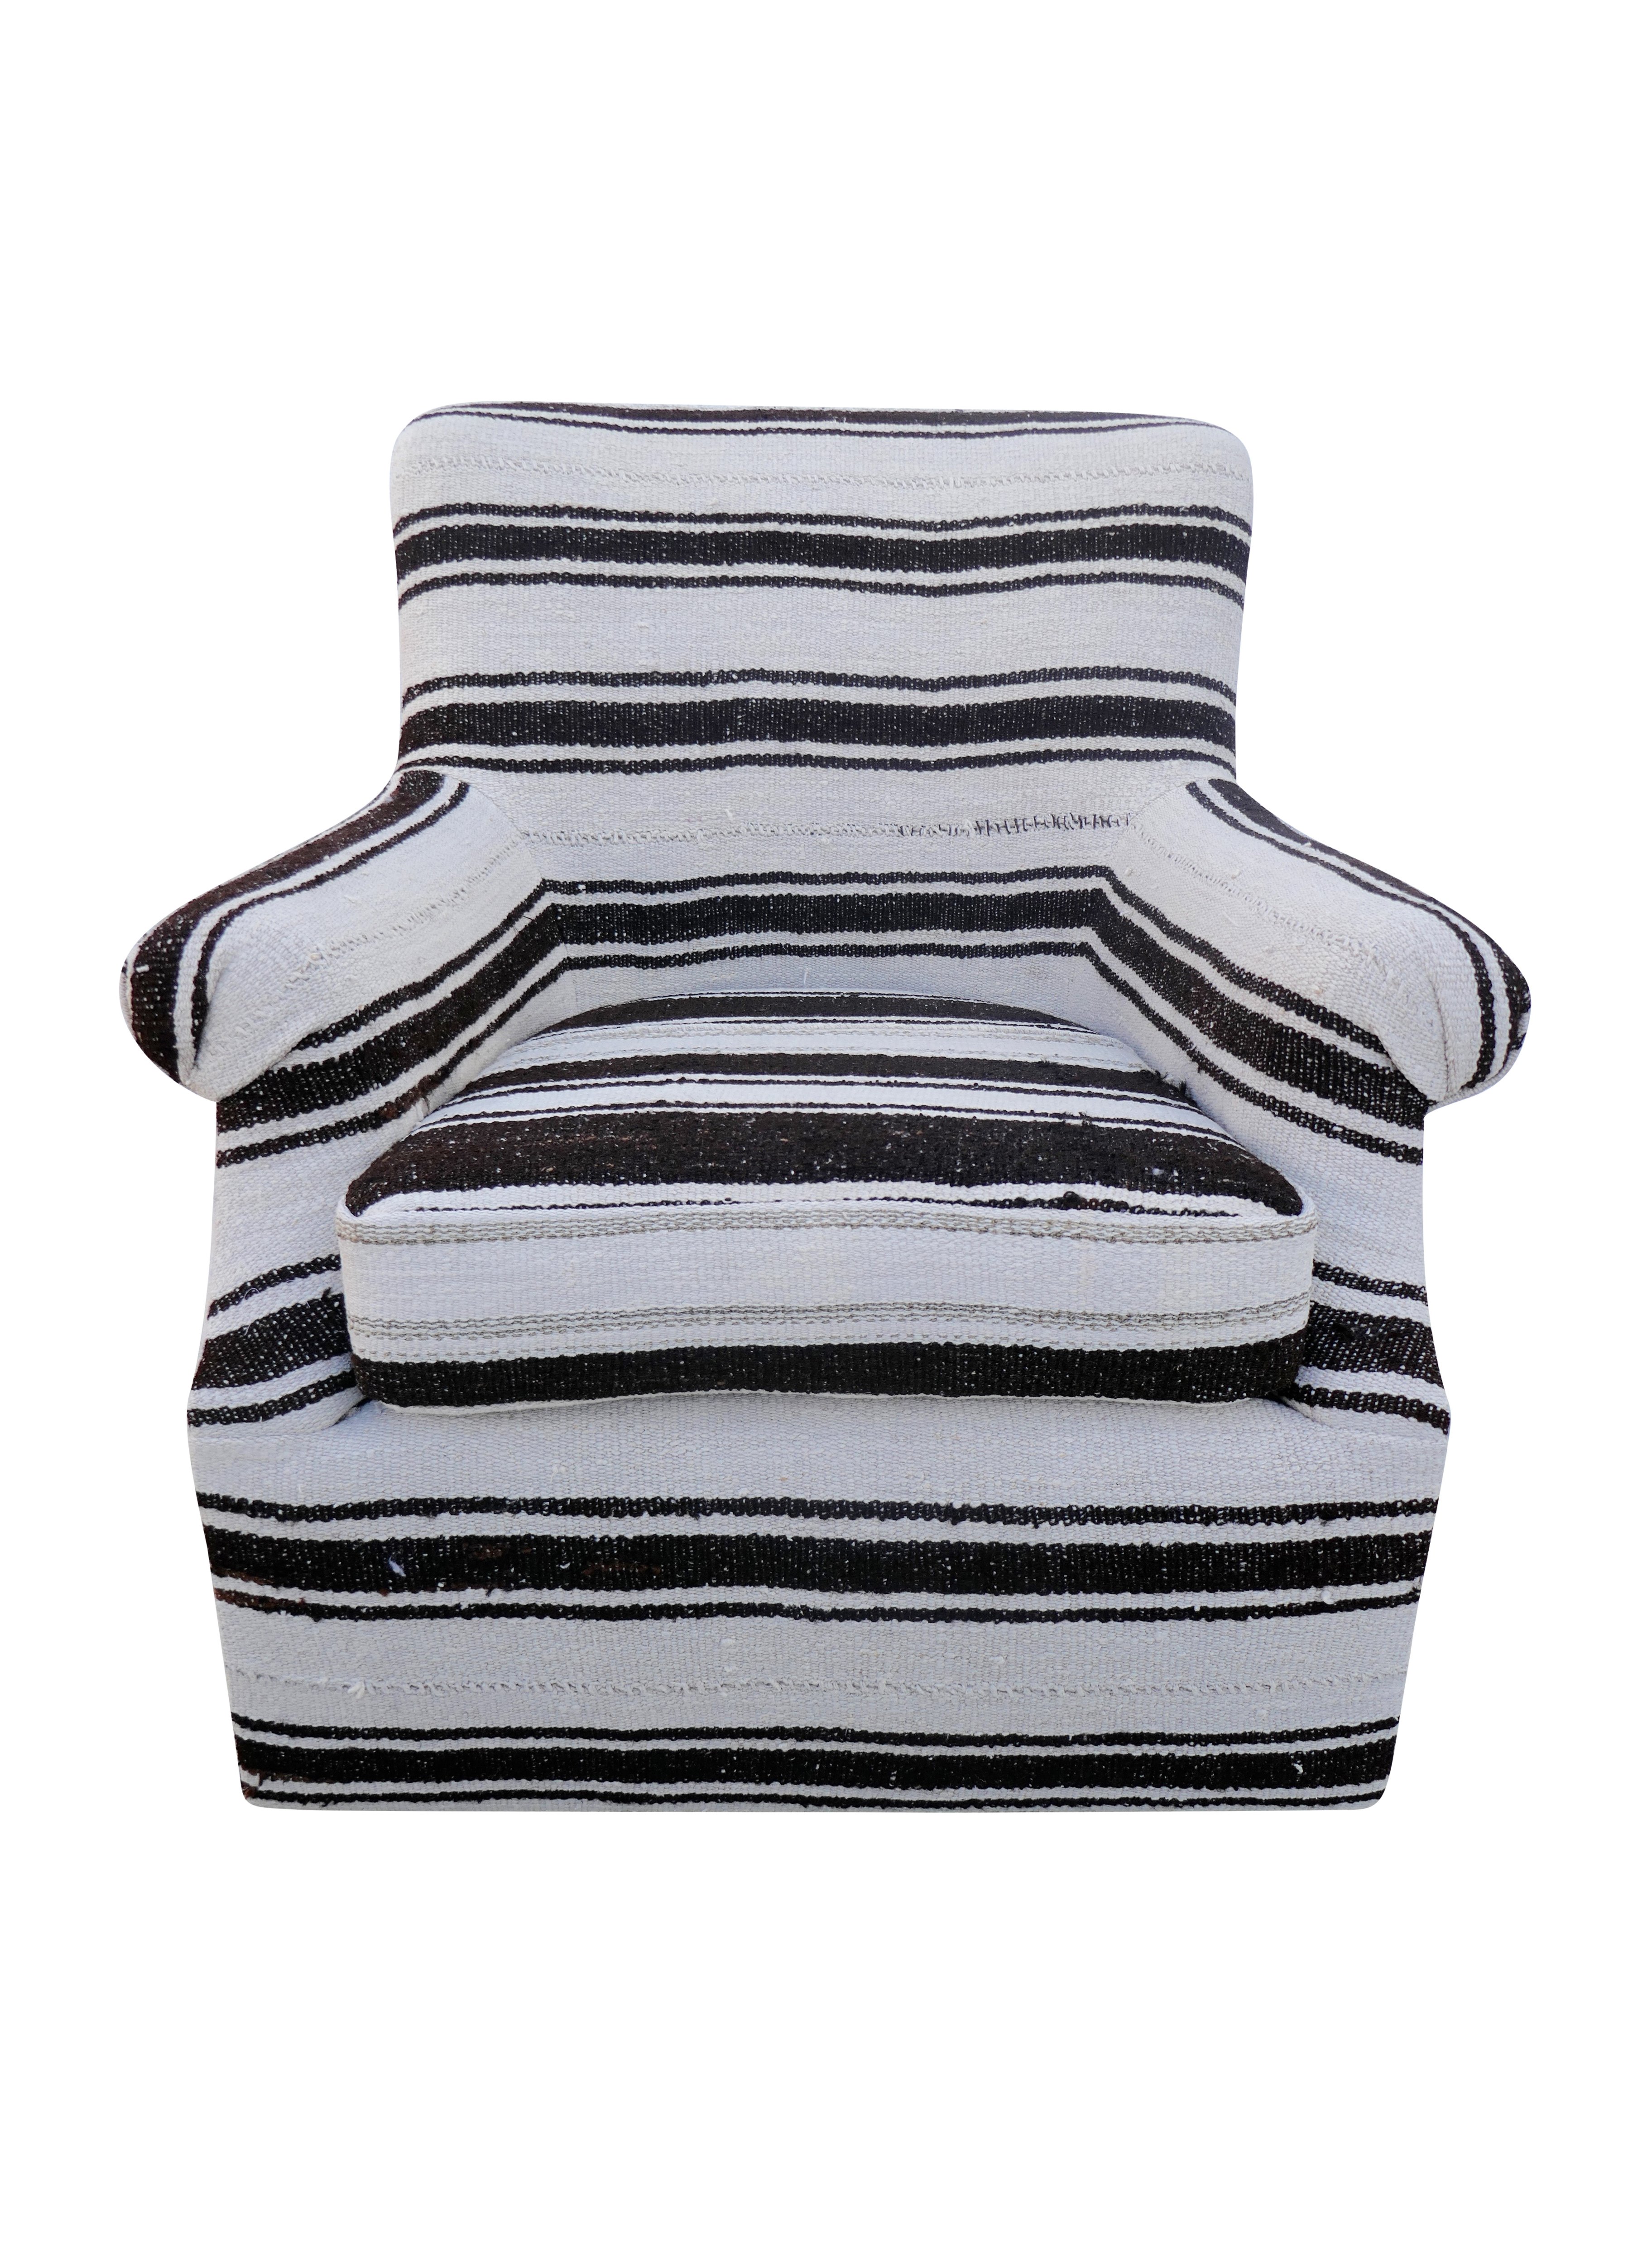 Vintage Berber Wool Kilim Swivel Chair~P77613186